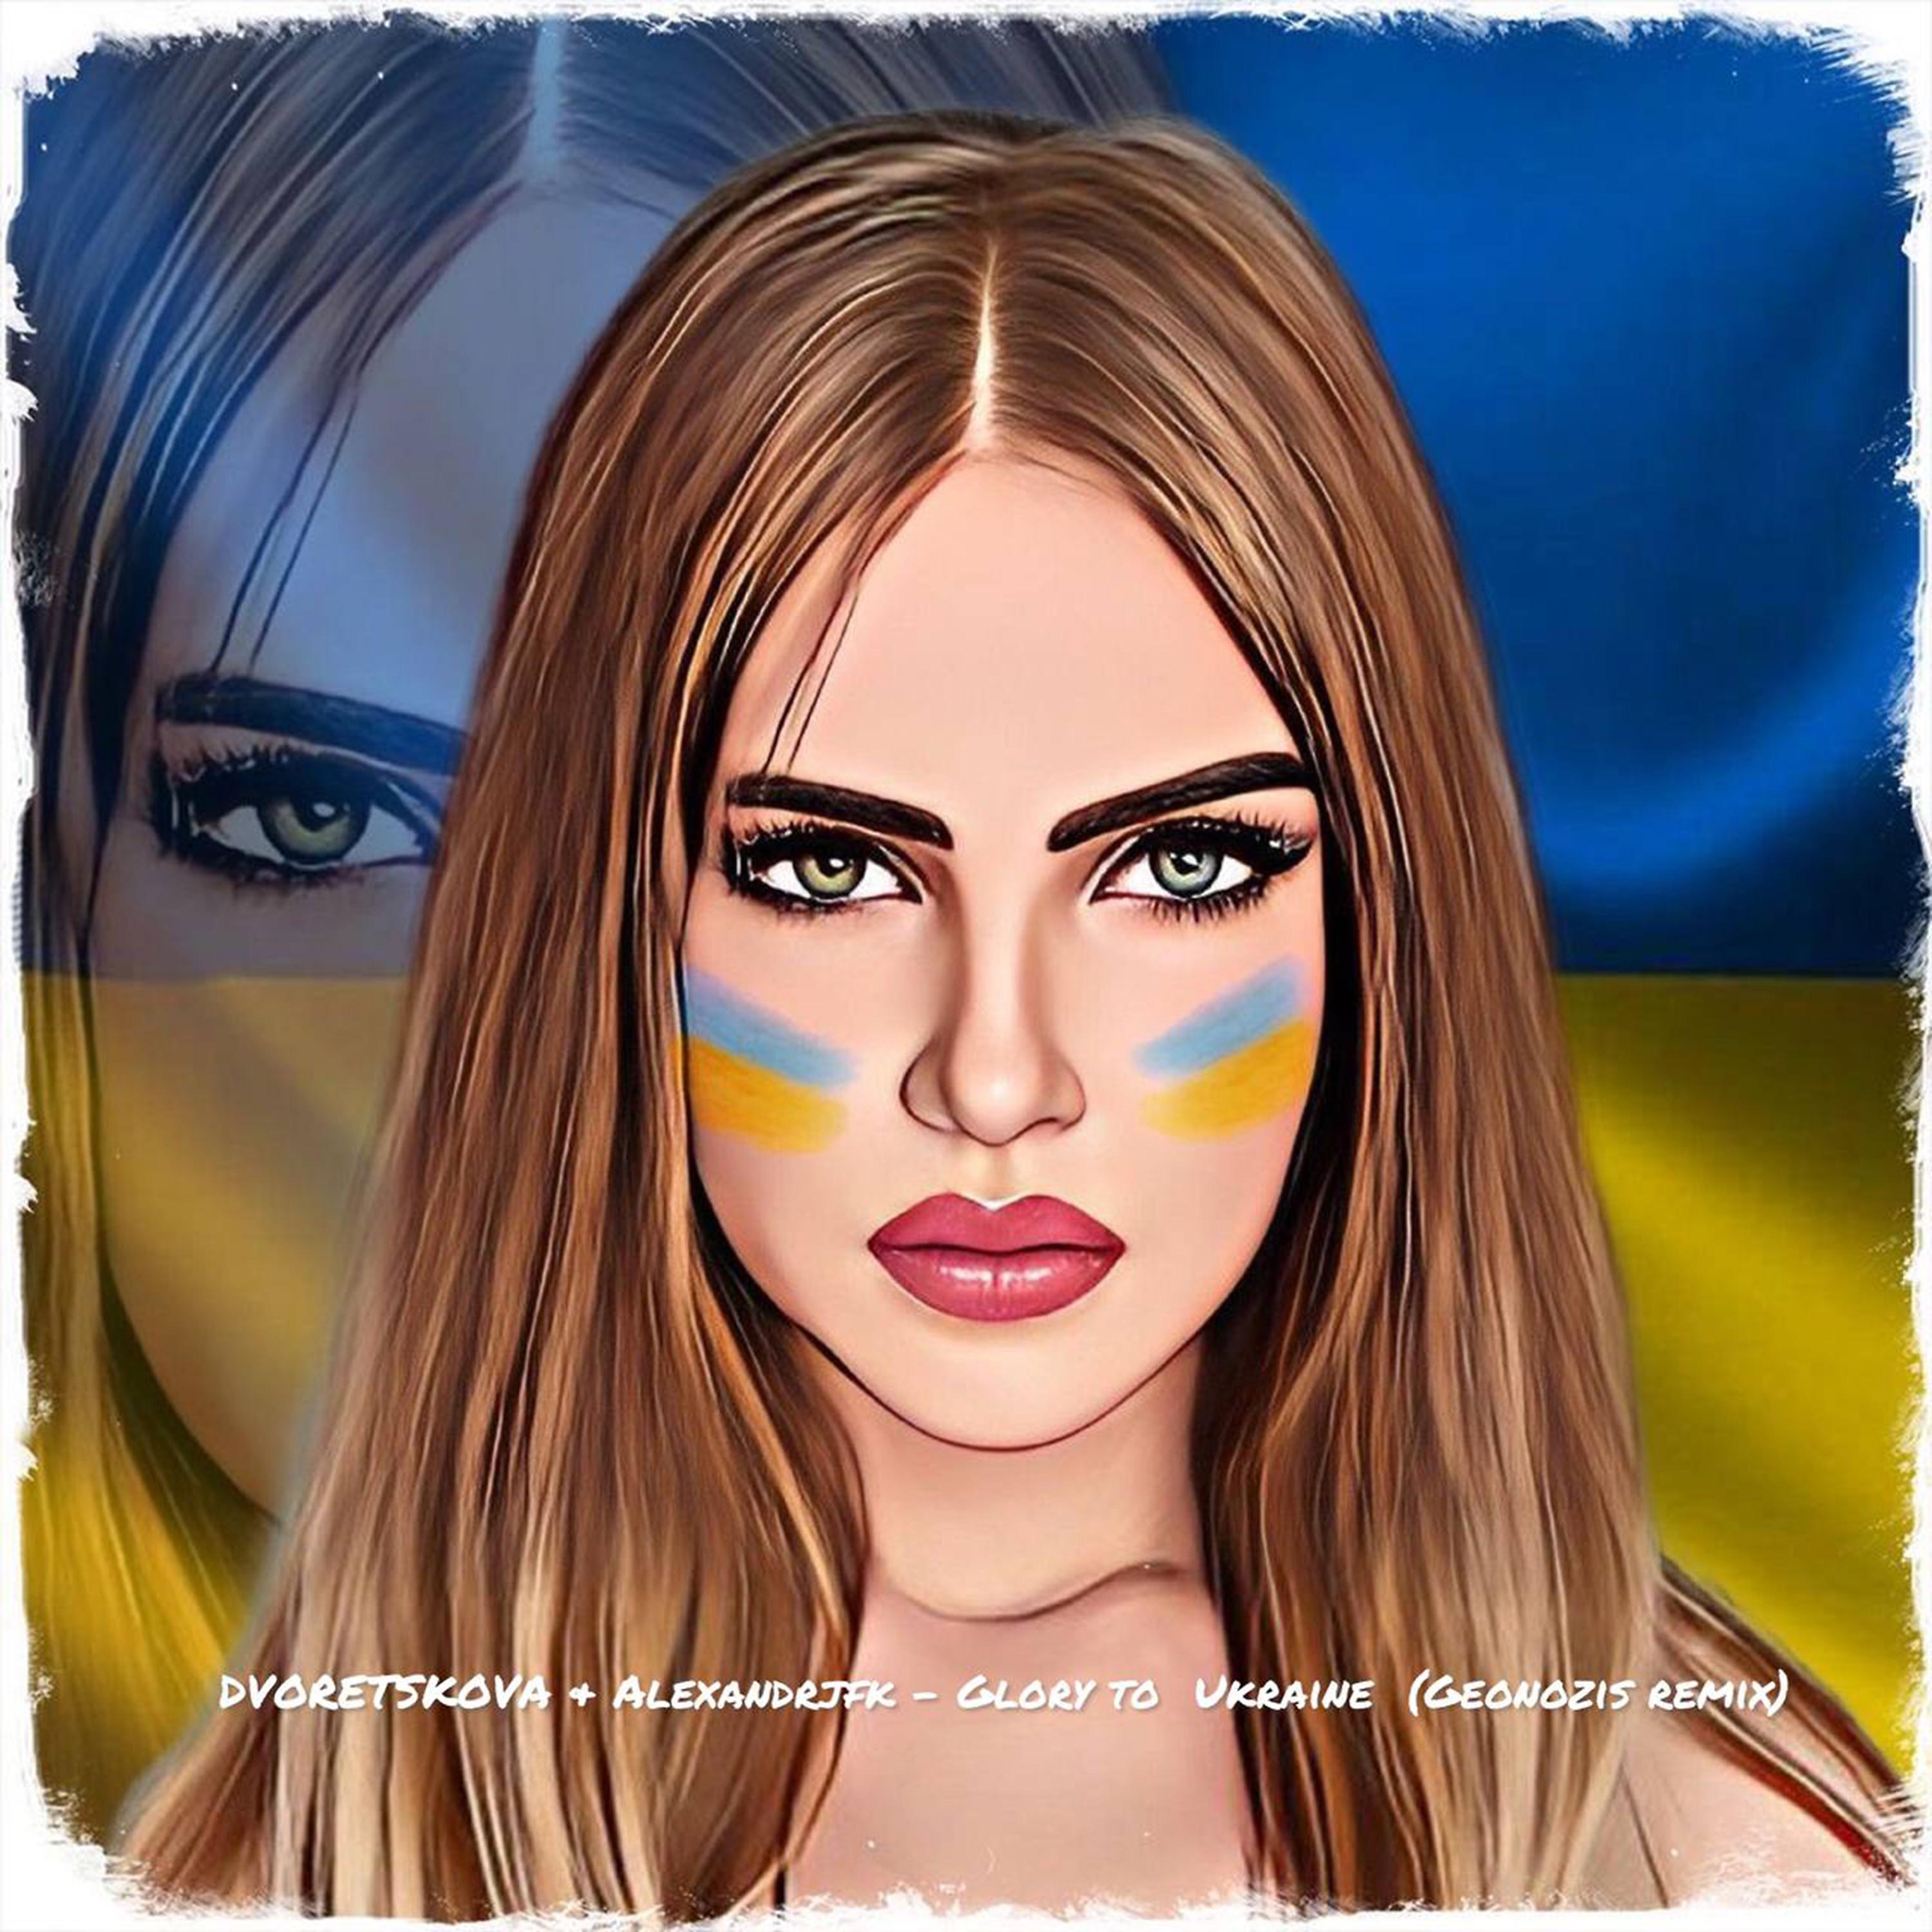 Постер альбома DVORETSKOVA & Alexandrjfk - GLORY TO UKRAINE (Geonozis Remix) 